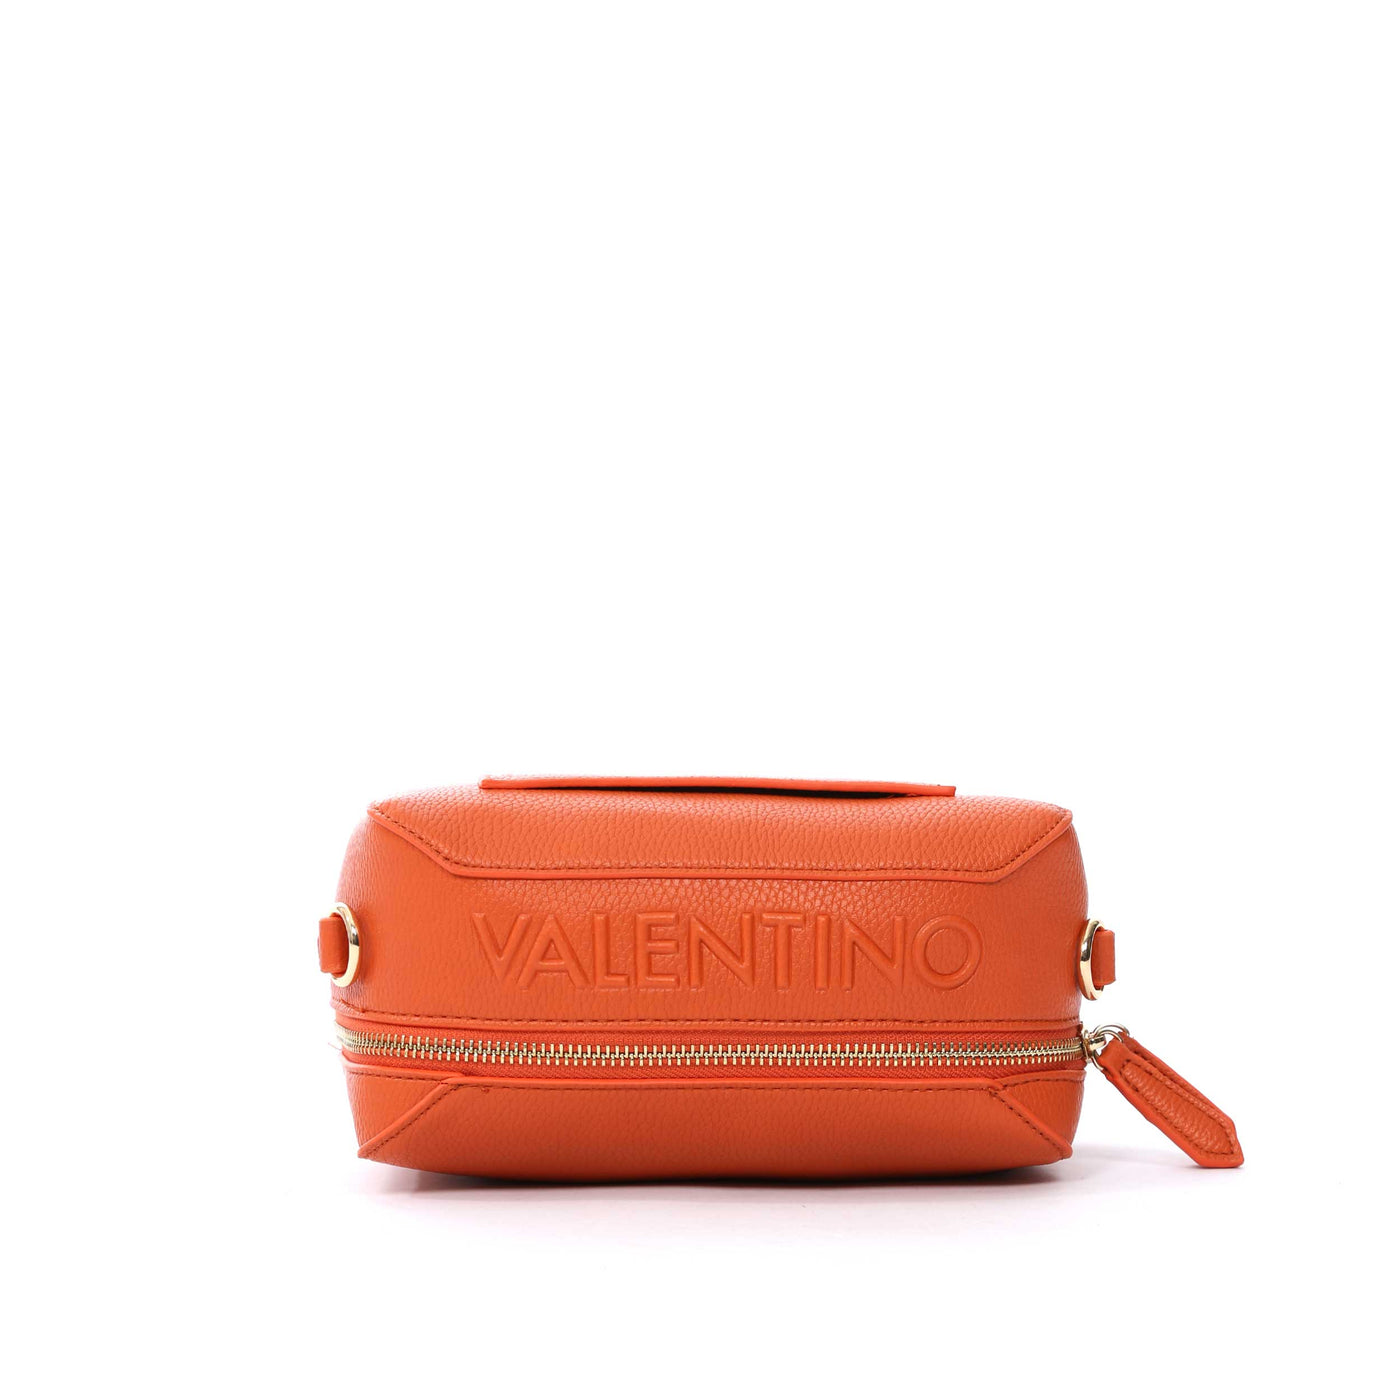 Valentino Bags Pattie Camera Bag in Arancio Orange Top